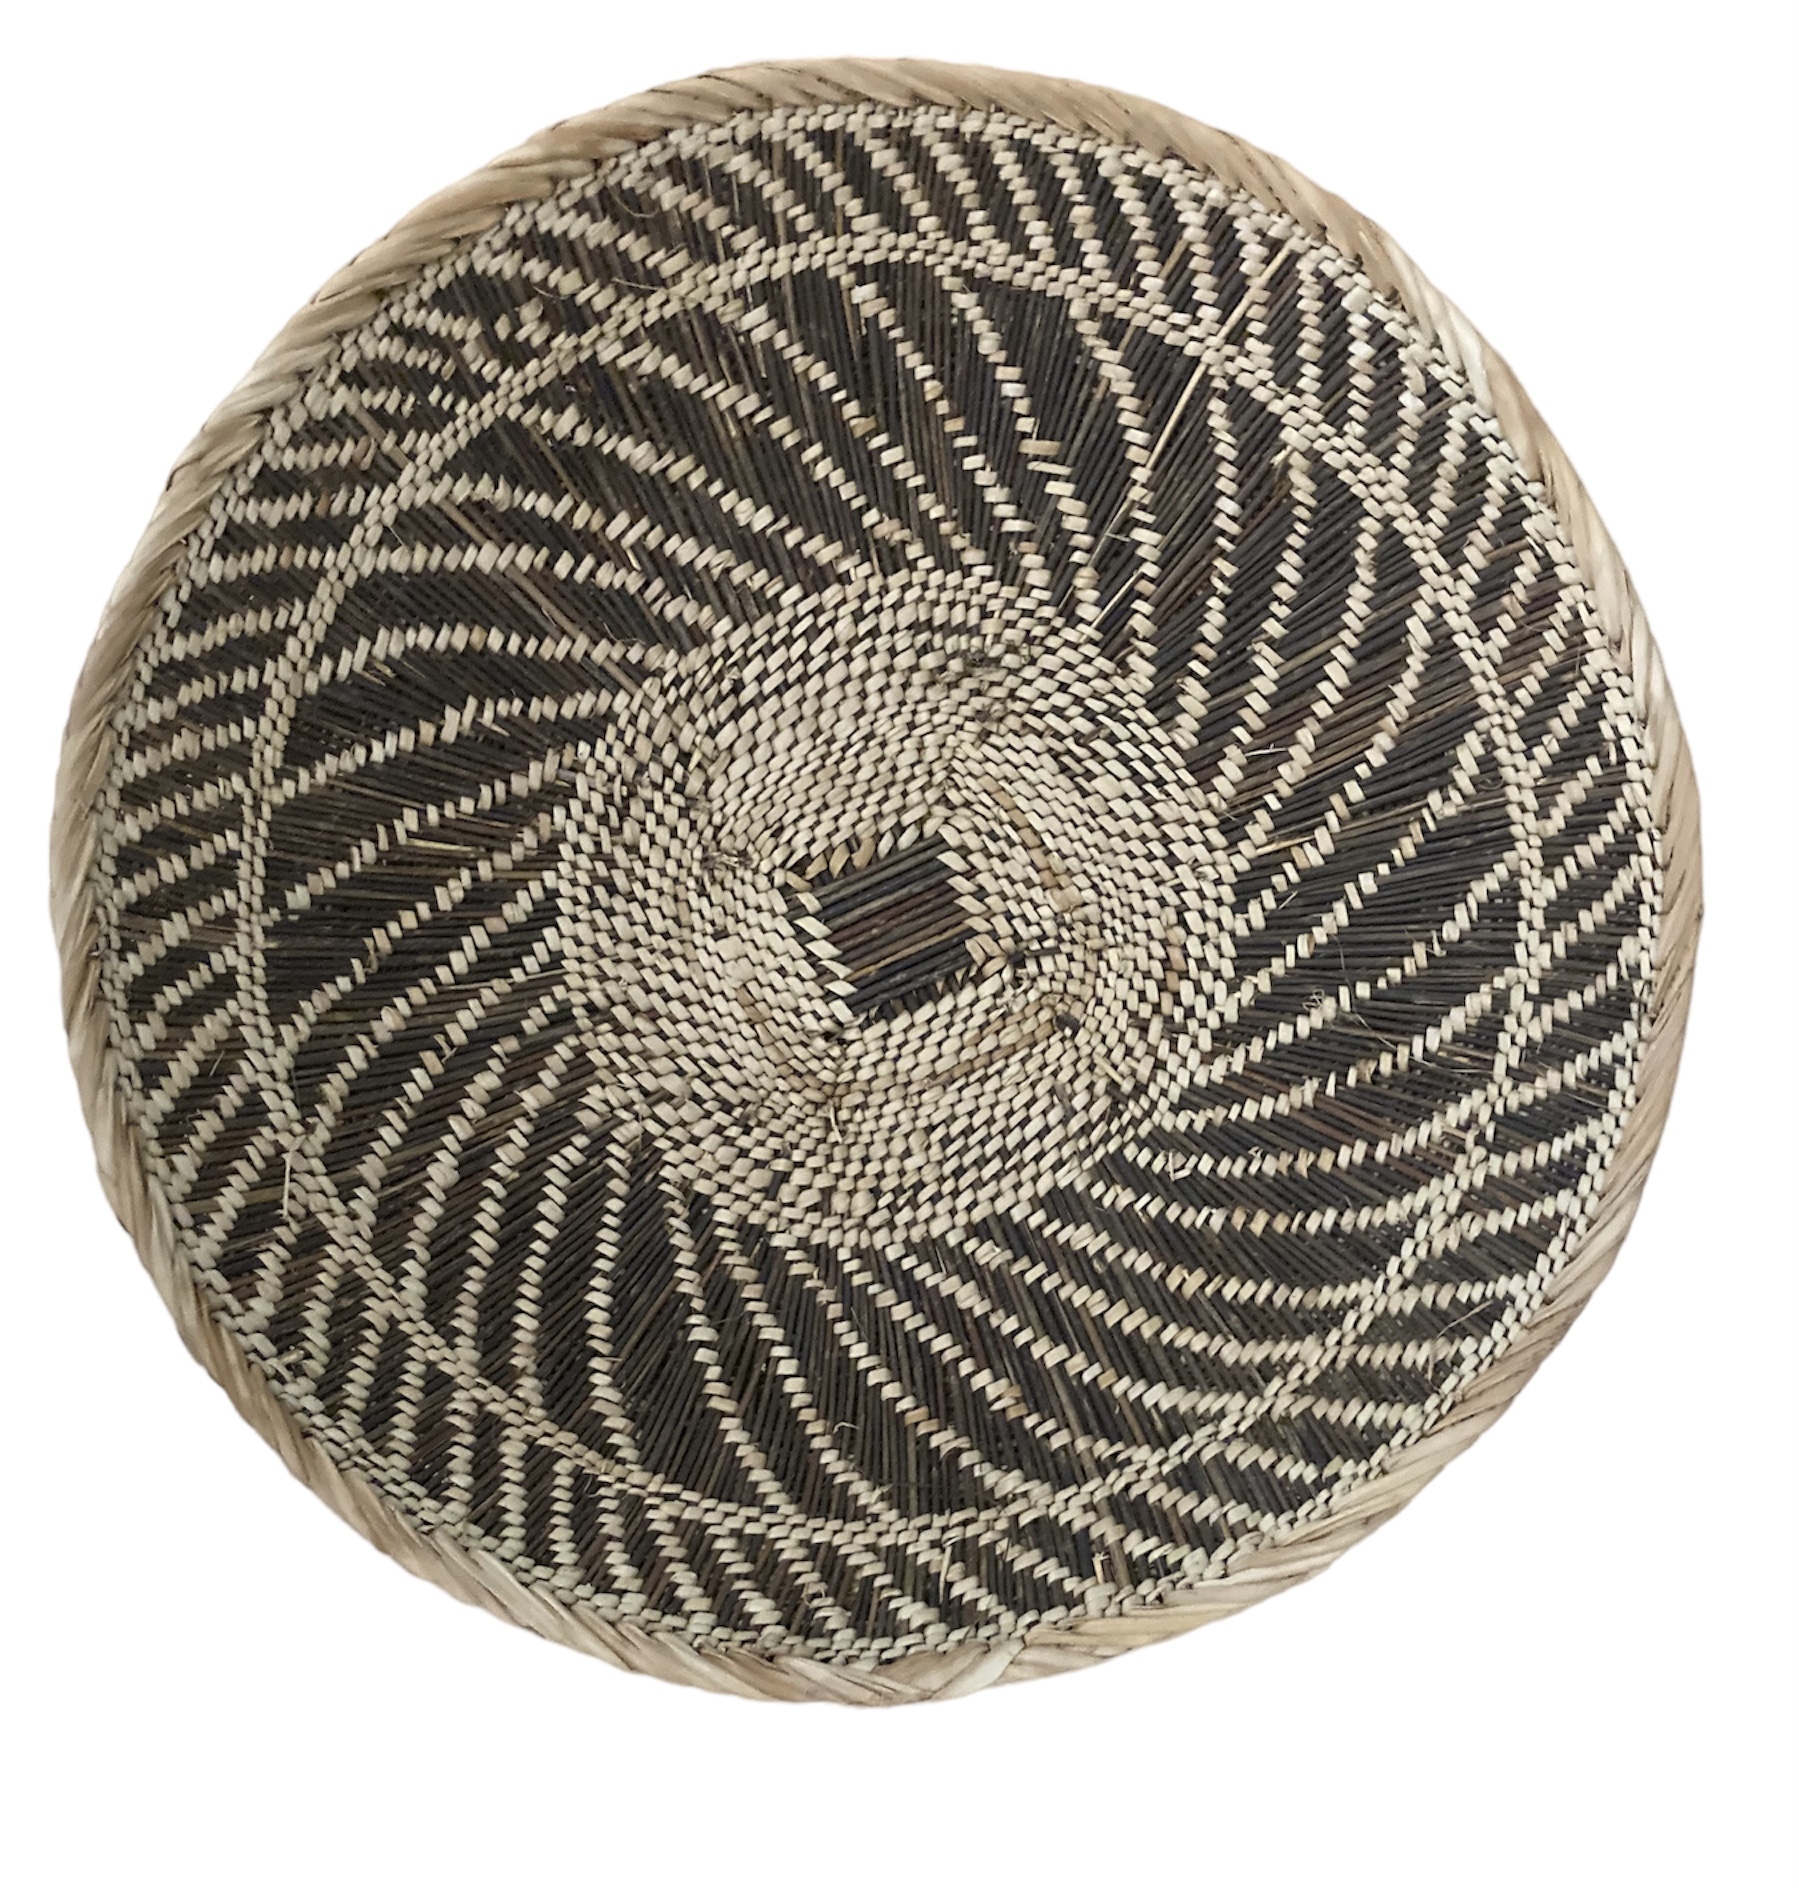 Batonga Baskets from Zambia #001